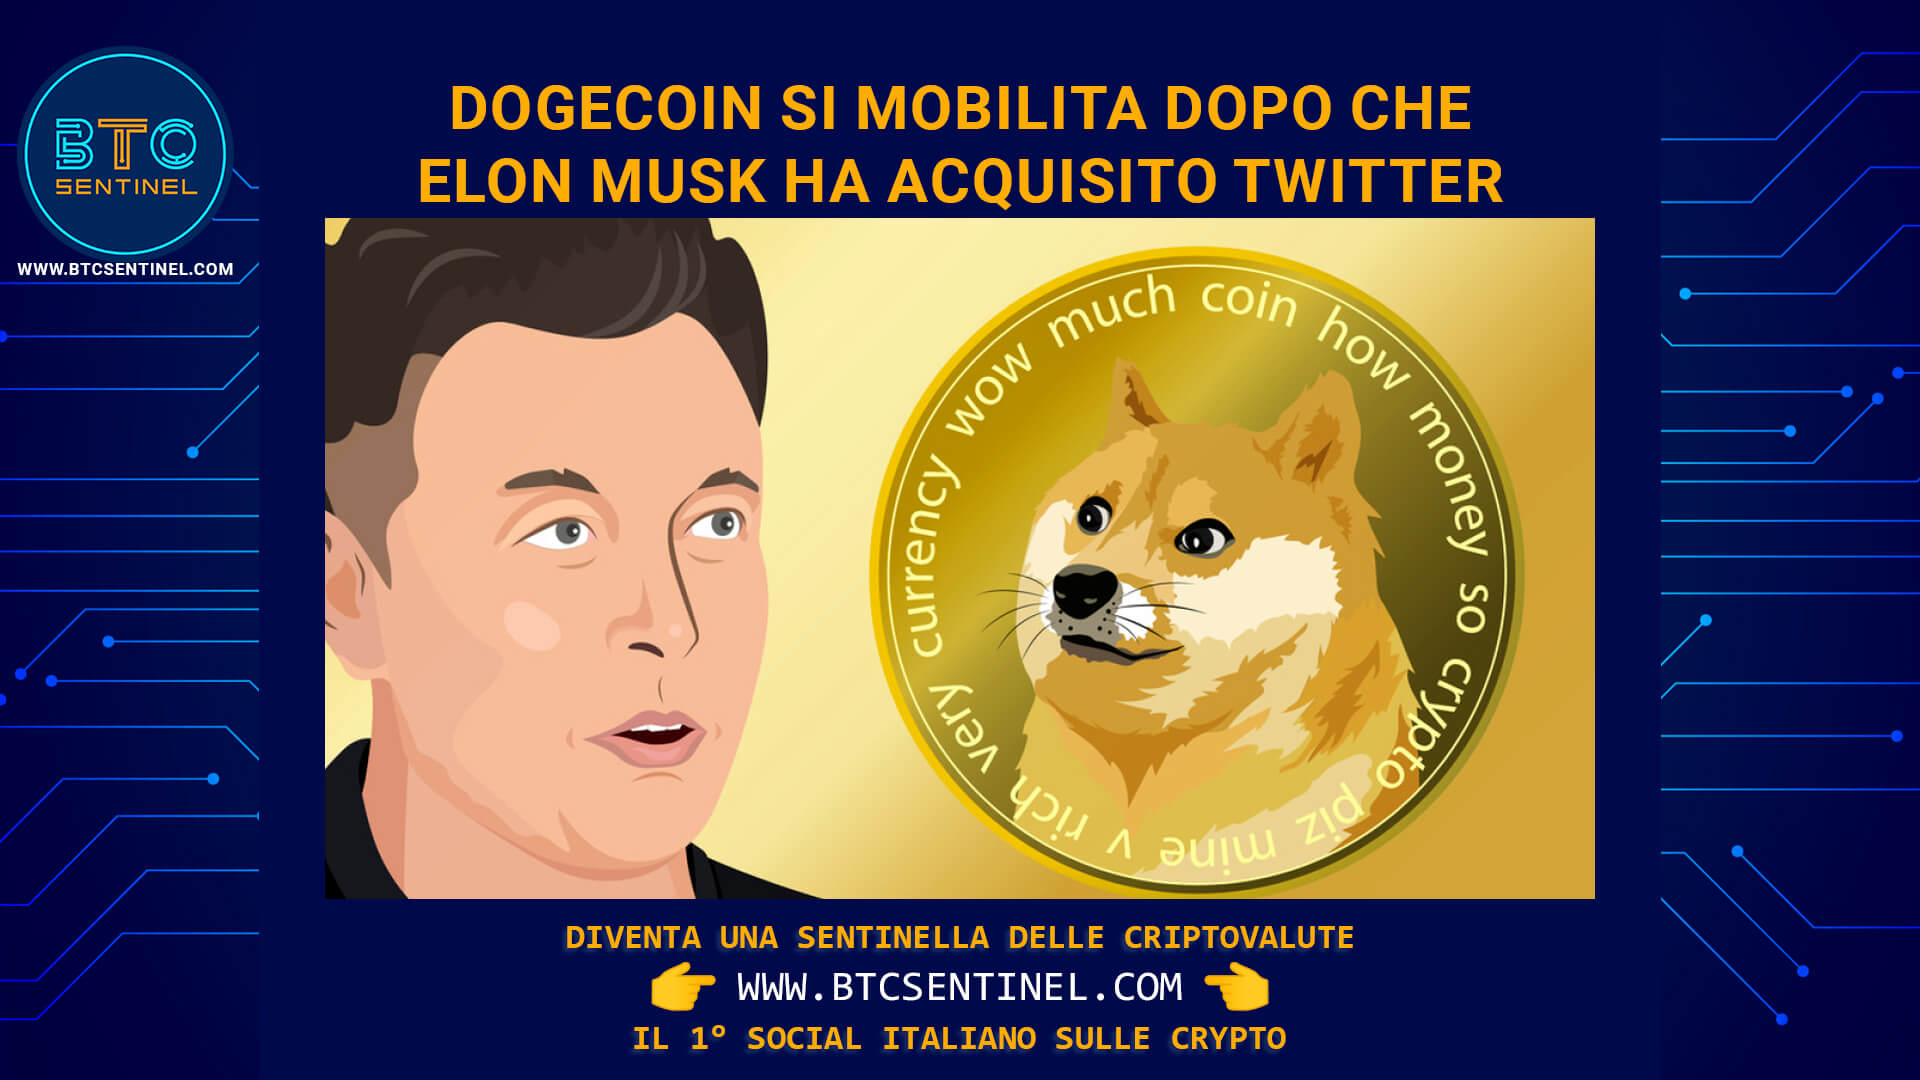 Il prezzo di Dogecoin in rialzo dopo l'acquisto di Twitter da parte di Elon Musk. Ma DOGE non è solo questo.